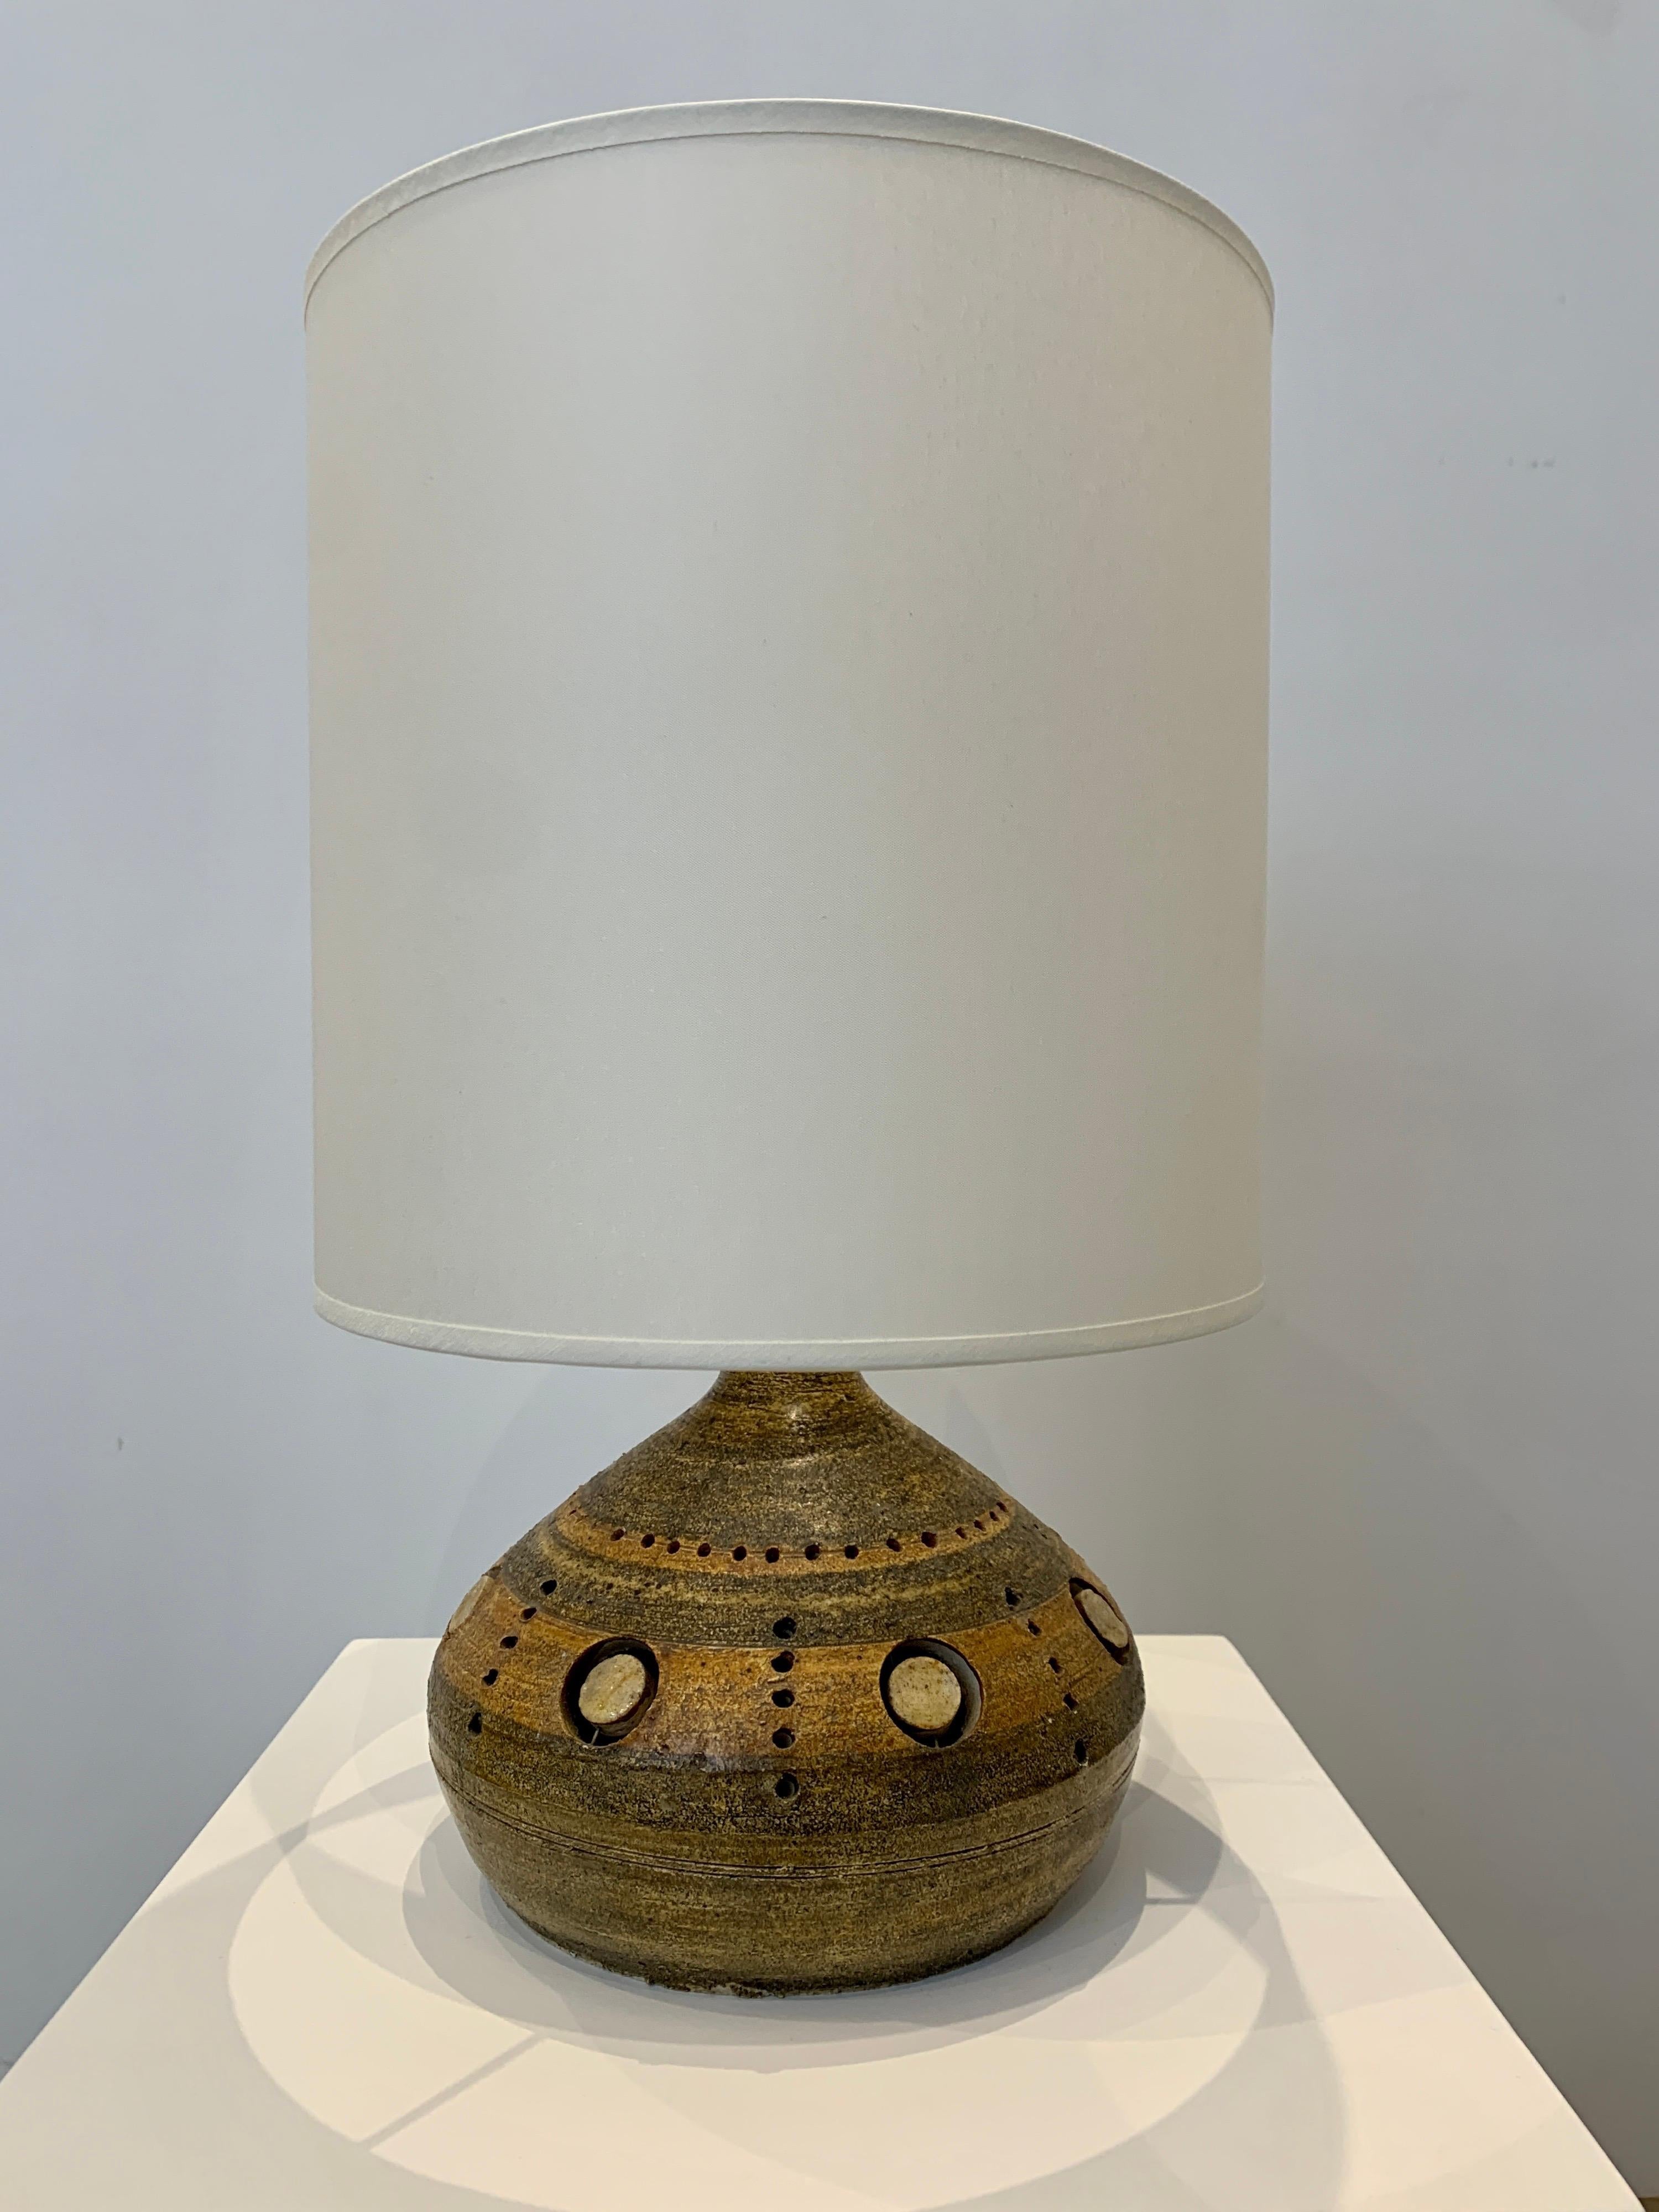 Georges Pelletier est un célèbre céramiste belge qui a été actif à Paris pendant la majeure partie de sa carrière. Ses lampes sont basées sur la couleur de la terre avec des éléments libres qui créent un motif décoratif, typique de son travail. La